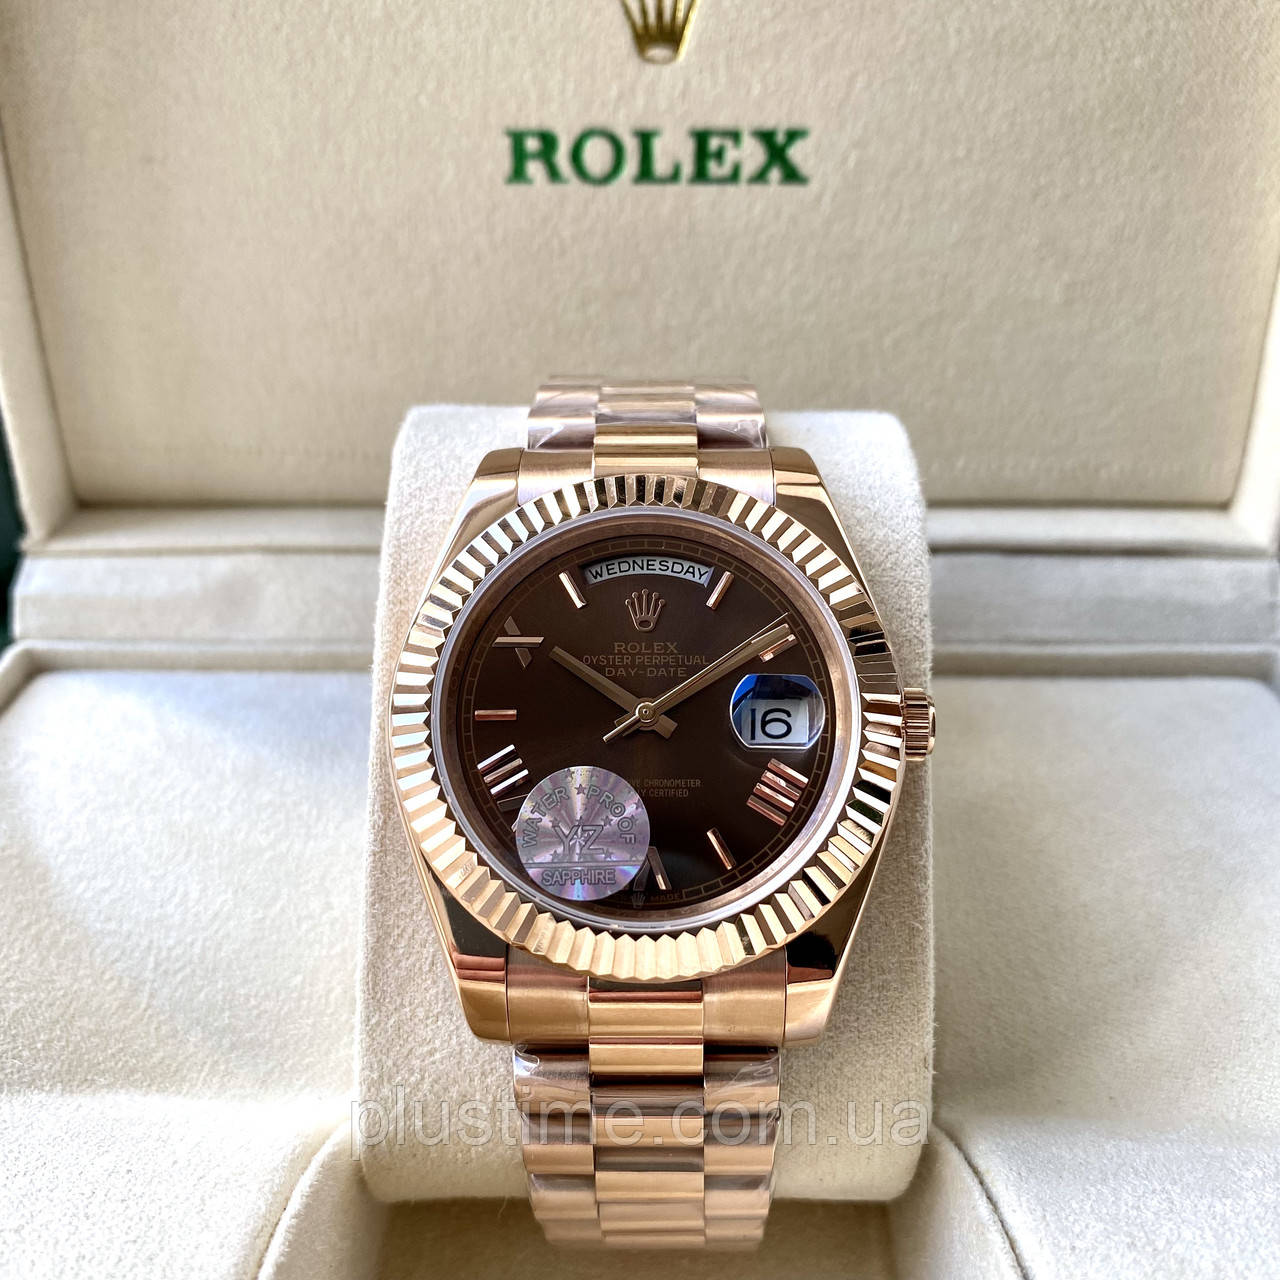 Механічні годинники Rolex Day Date Brown ААА наручні на сталевому браслеті з календарем і сапфіровим склом